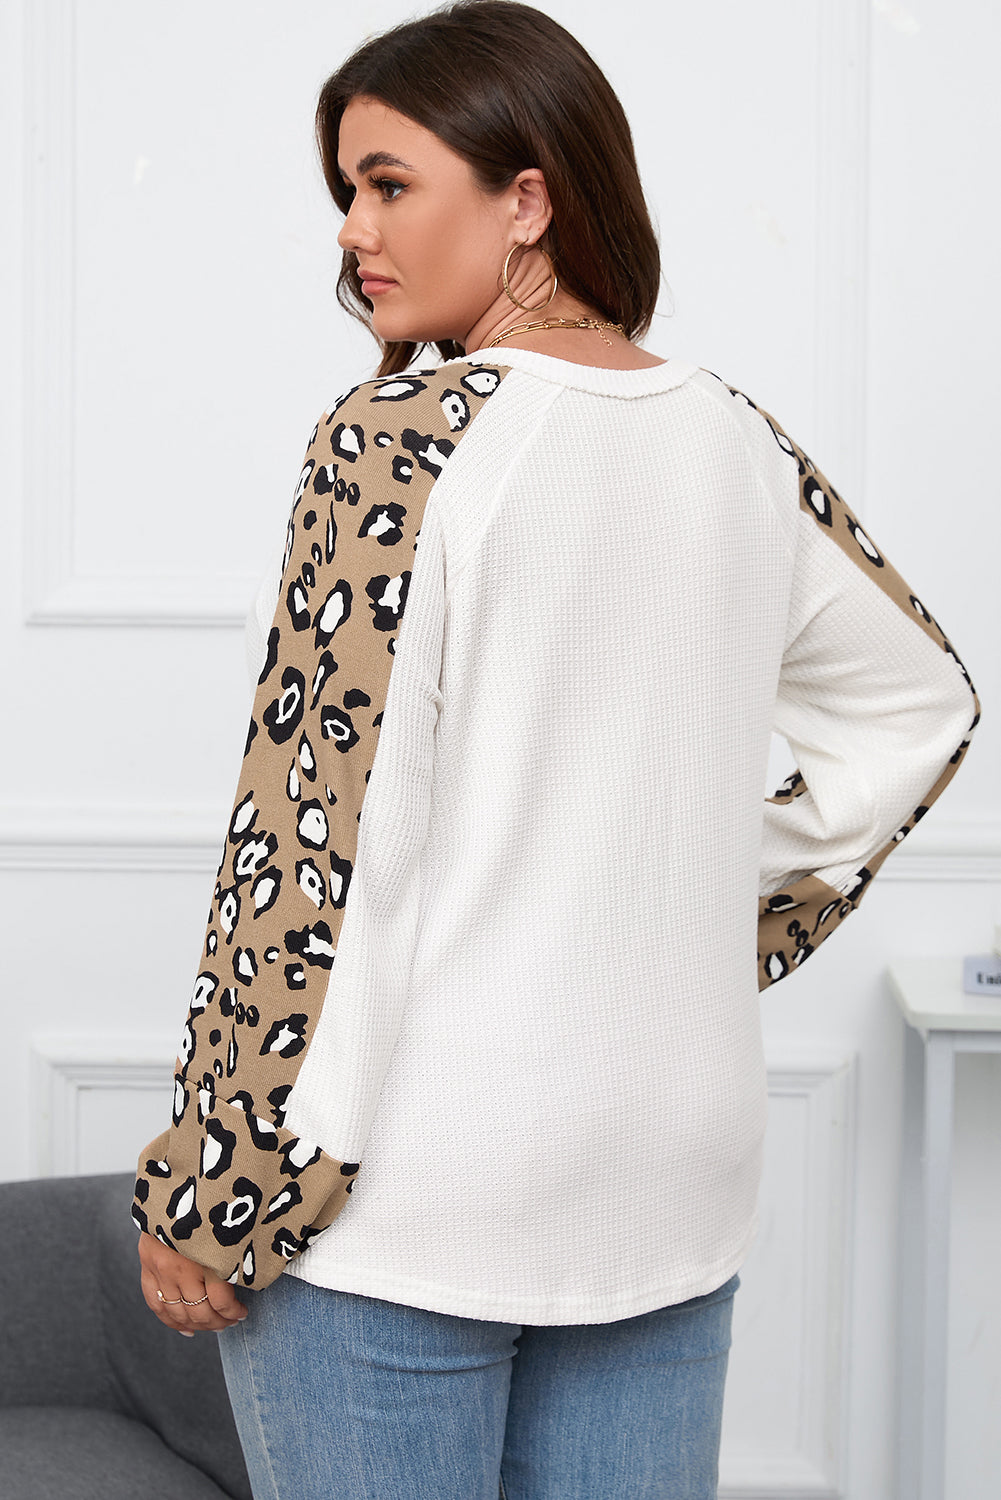 Majica s dugim rukavima u obliku kontrastnog leoparda s uzorkom velike veličine i bež boje